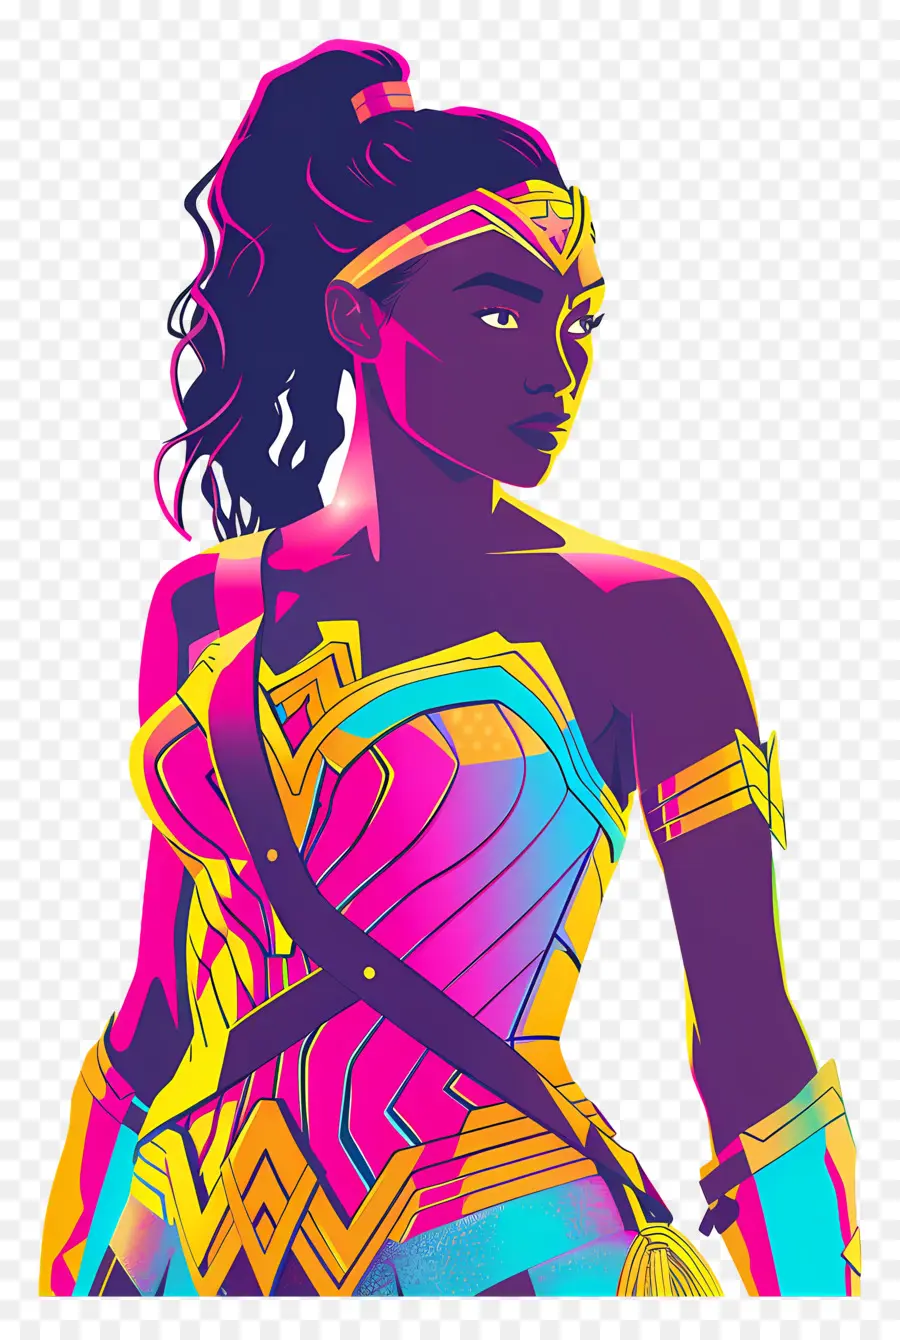 Nubia Wonder Woman Woman Dress Shar Pur - Người phụ nữ sôi động, ngạc nhiên trong Minh họa màu neon